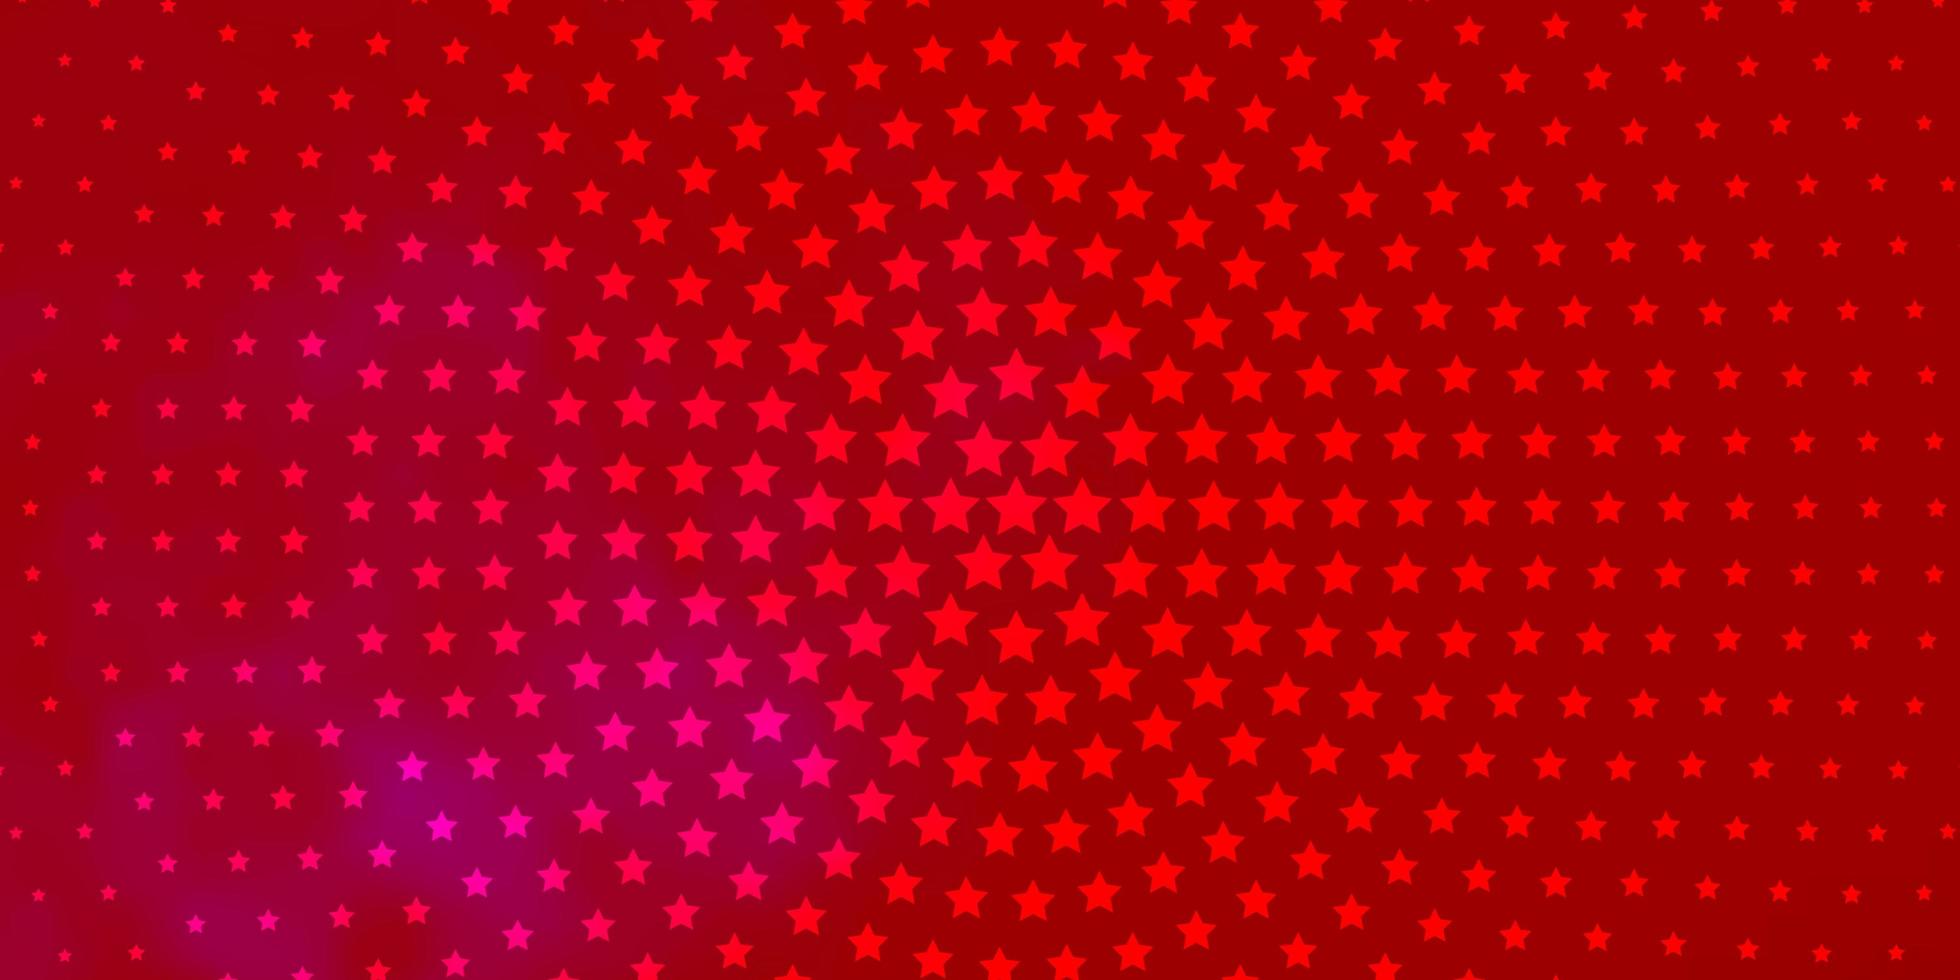 luz rosa, vermelho vetor padrão com estrelas abstratas. desfocar design decorativo em estilo simples com estrelas. design para a promoção de seus negócios.